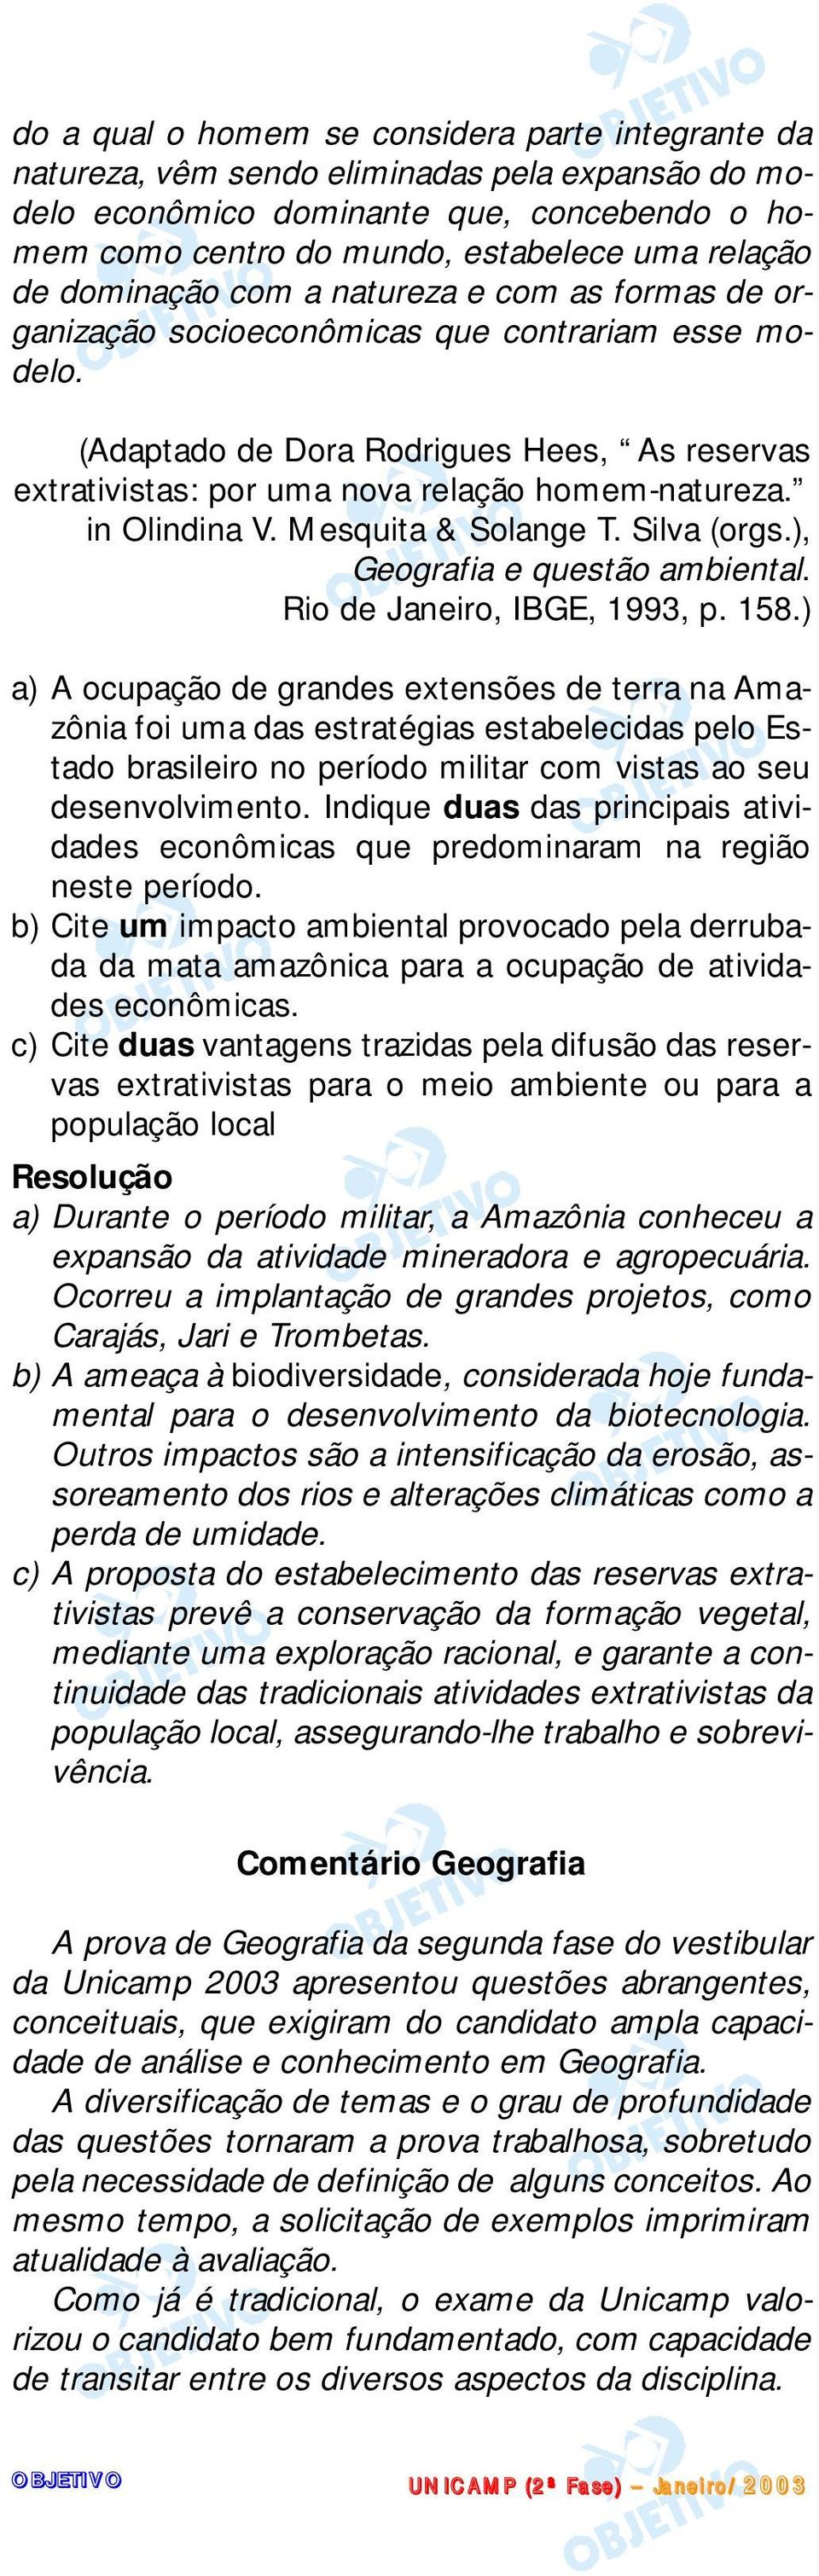 in Olindina V. Mesquita & Solange T. Silva (orgs.), Geografia e questão ambiental. Rio de Janeiro, IBGE, 1993, p. 158.